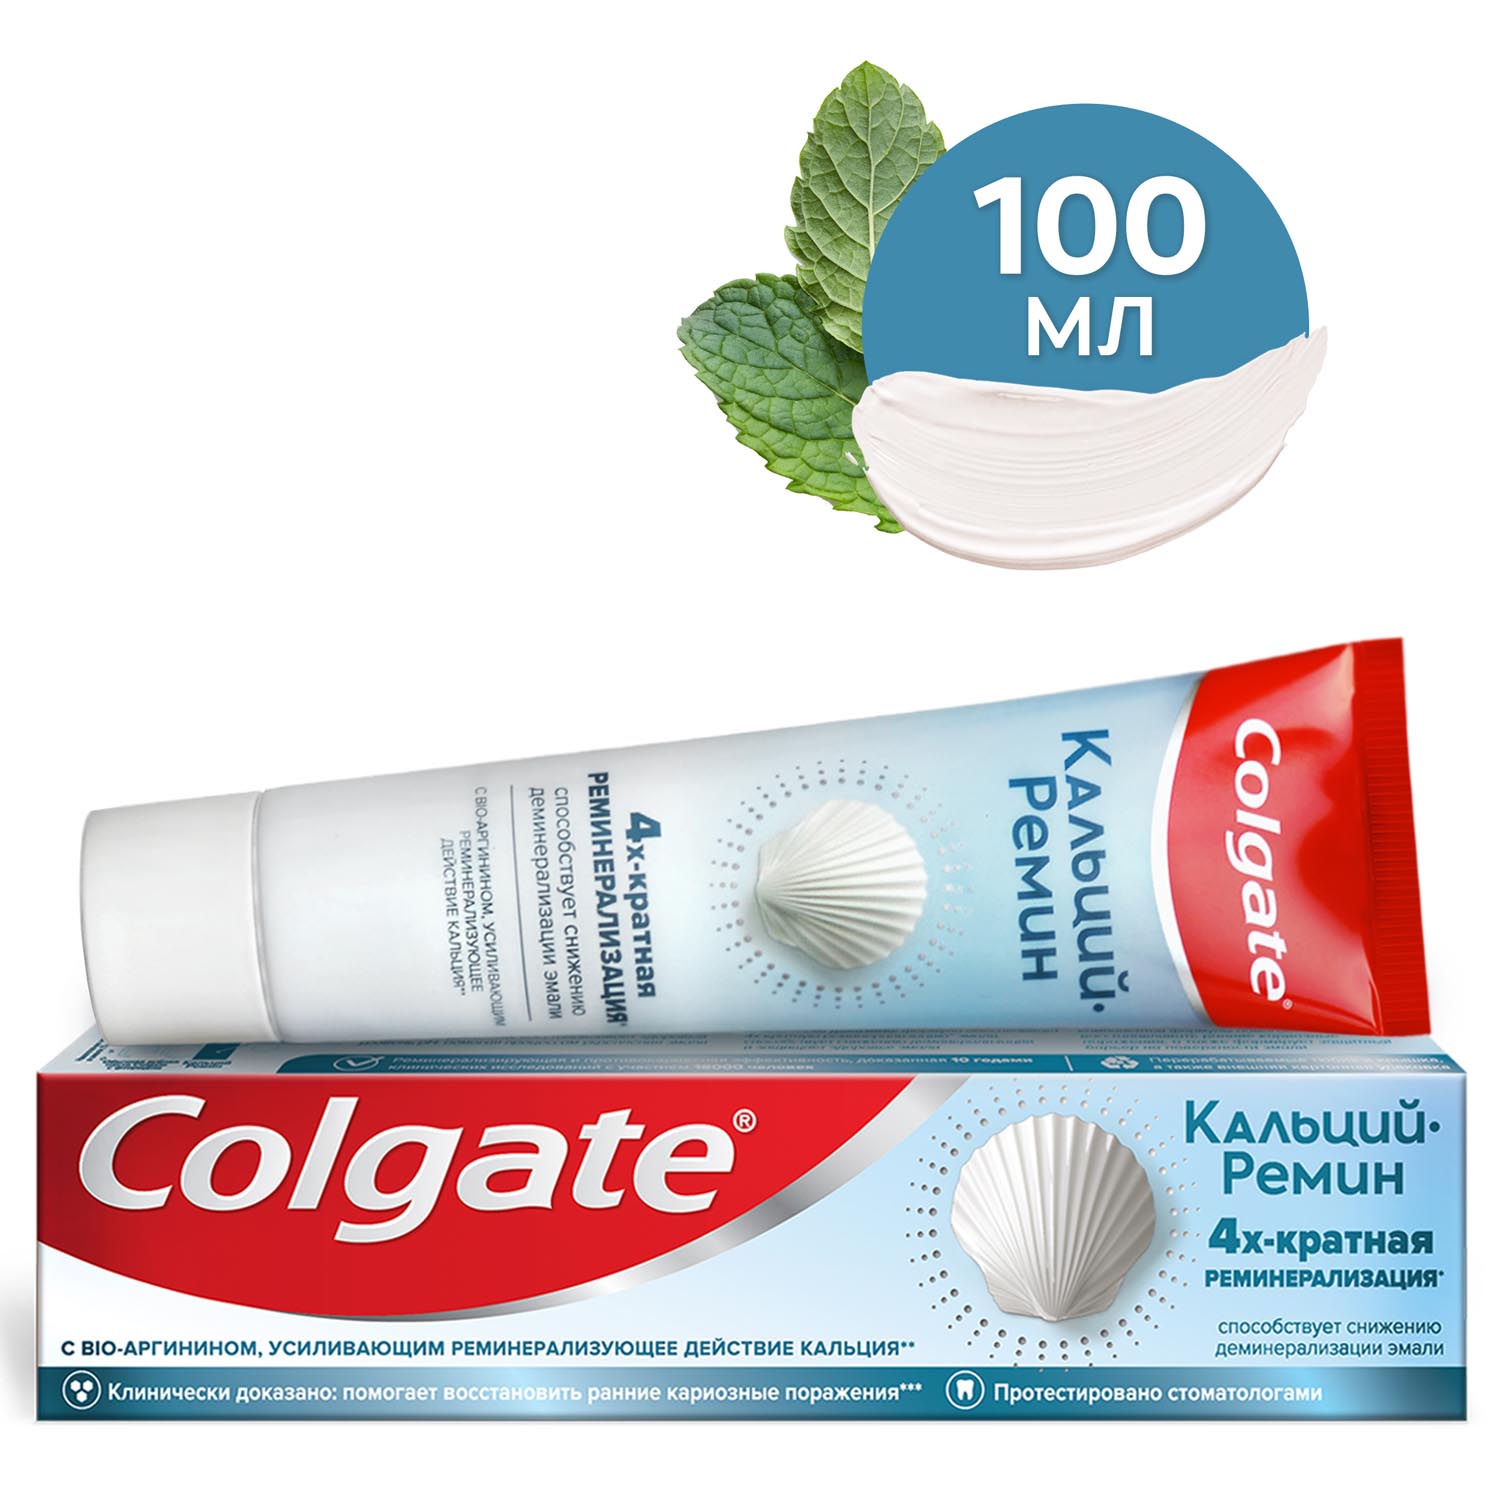 зубная паста для восстановления эмали 2 шт Зубная паста Colgate Кальций-Ремин с природным био-аргинином для восстановления и защиты здоровья эмали зубов путем 4-х их кратной реминерализации, 100 мл